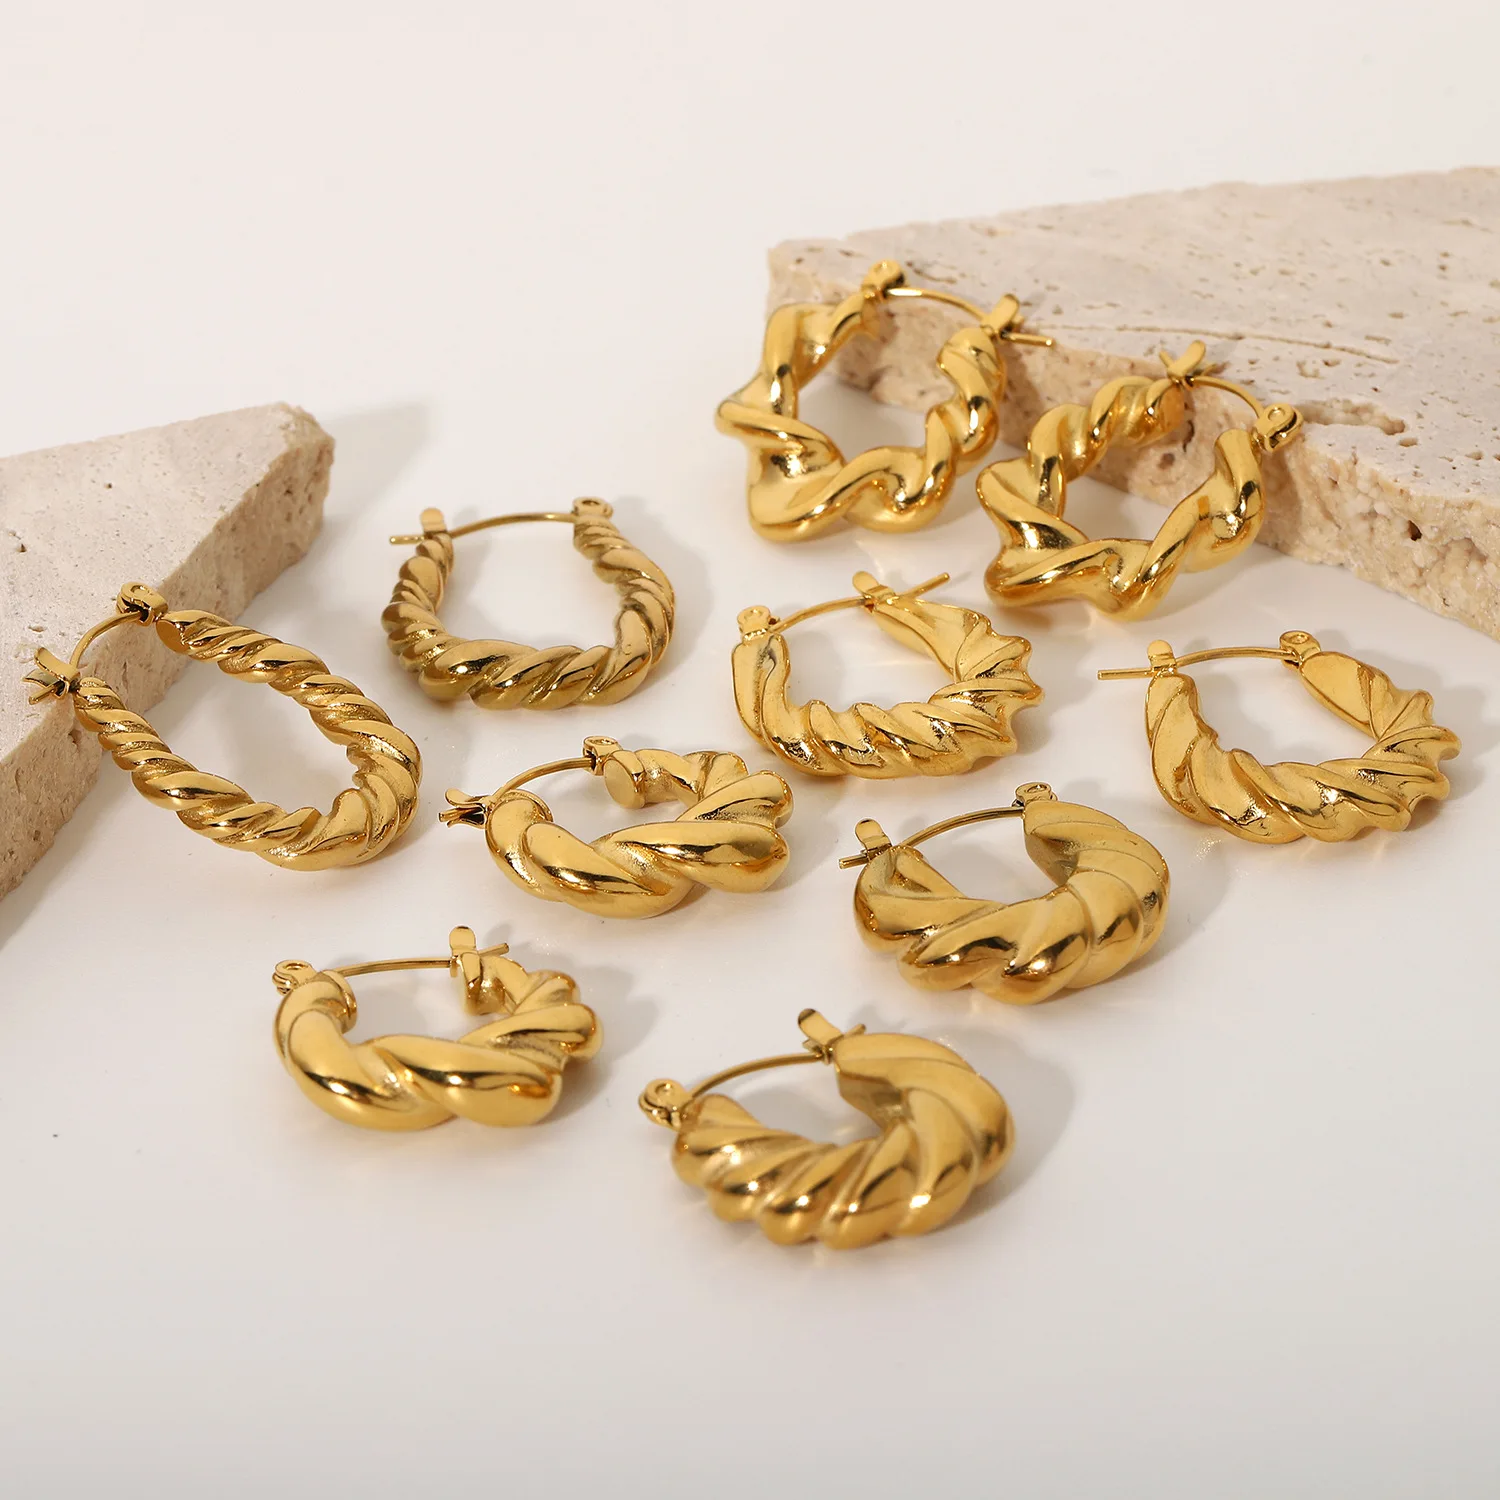 

18K Gold-plated Stainless Steel Twist Wreath Earrings Titanium Steel Geometric Earrings for Women